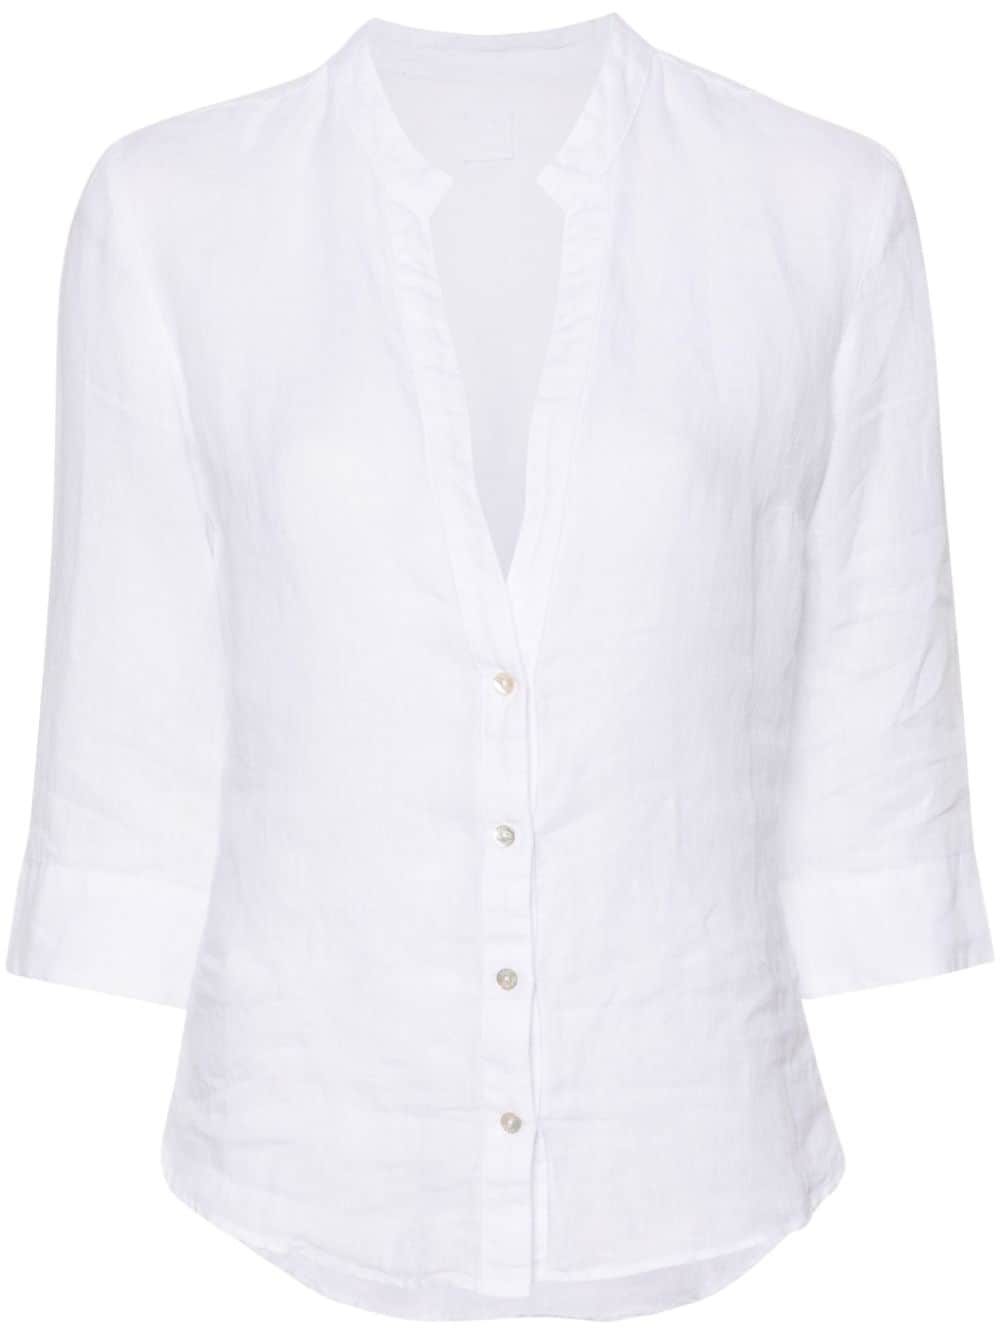 V-neck linen blouse